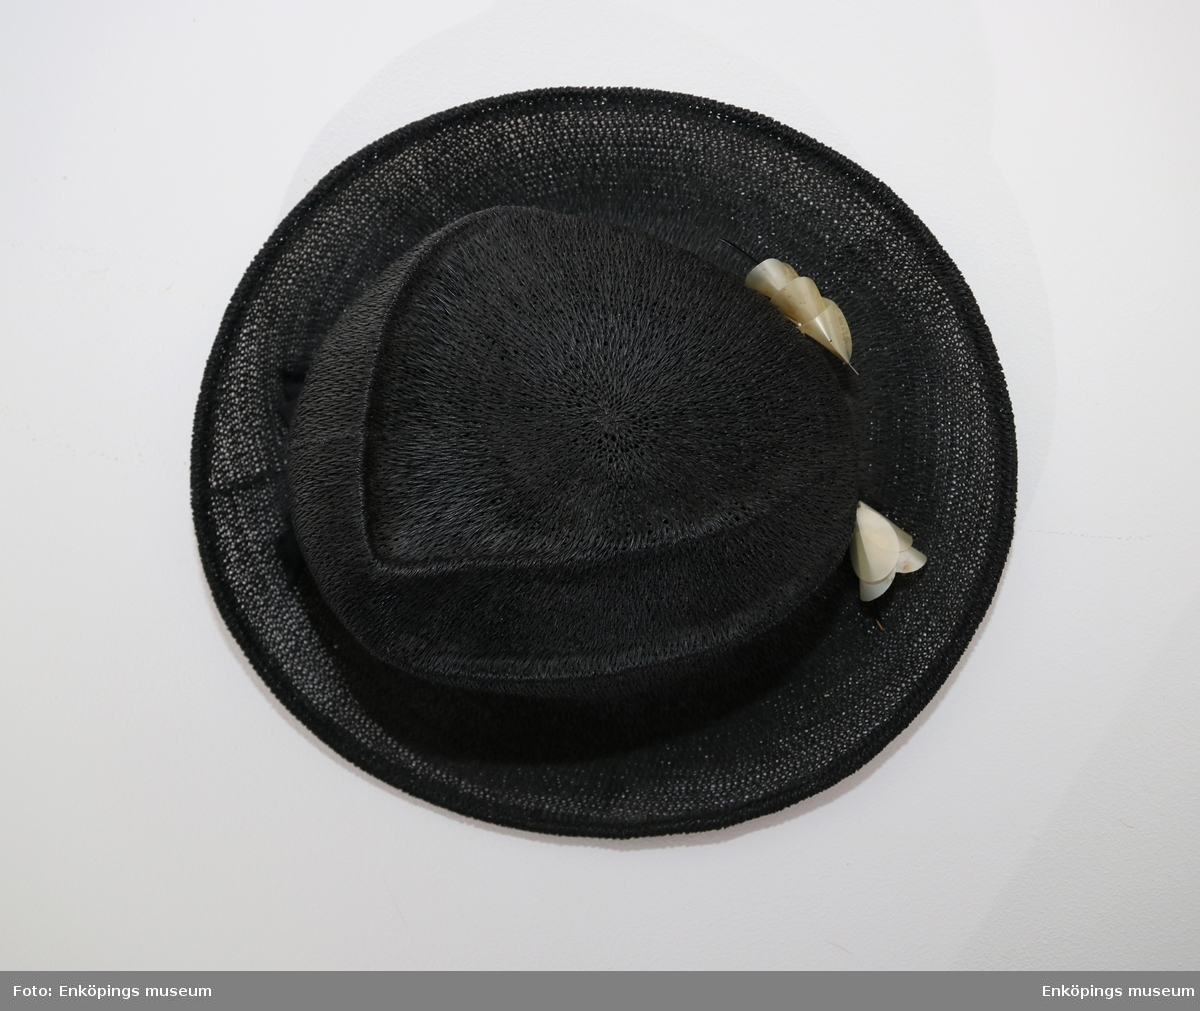 Svart hatt från Nya Mode & Tapisseriaffären, Enköping. Hatten har en rund modellerad kulle, svagt uppböjt brätte och svart ripsband runt kullen. Det finns en prydnad fram på ripsbandet, en ca 15 cm lång svart lackad trästicka med påträdda vita klockformiga prydnader.